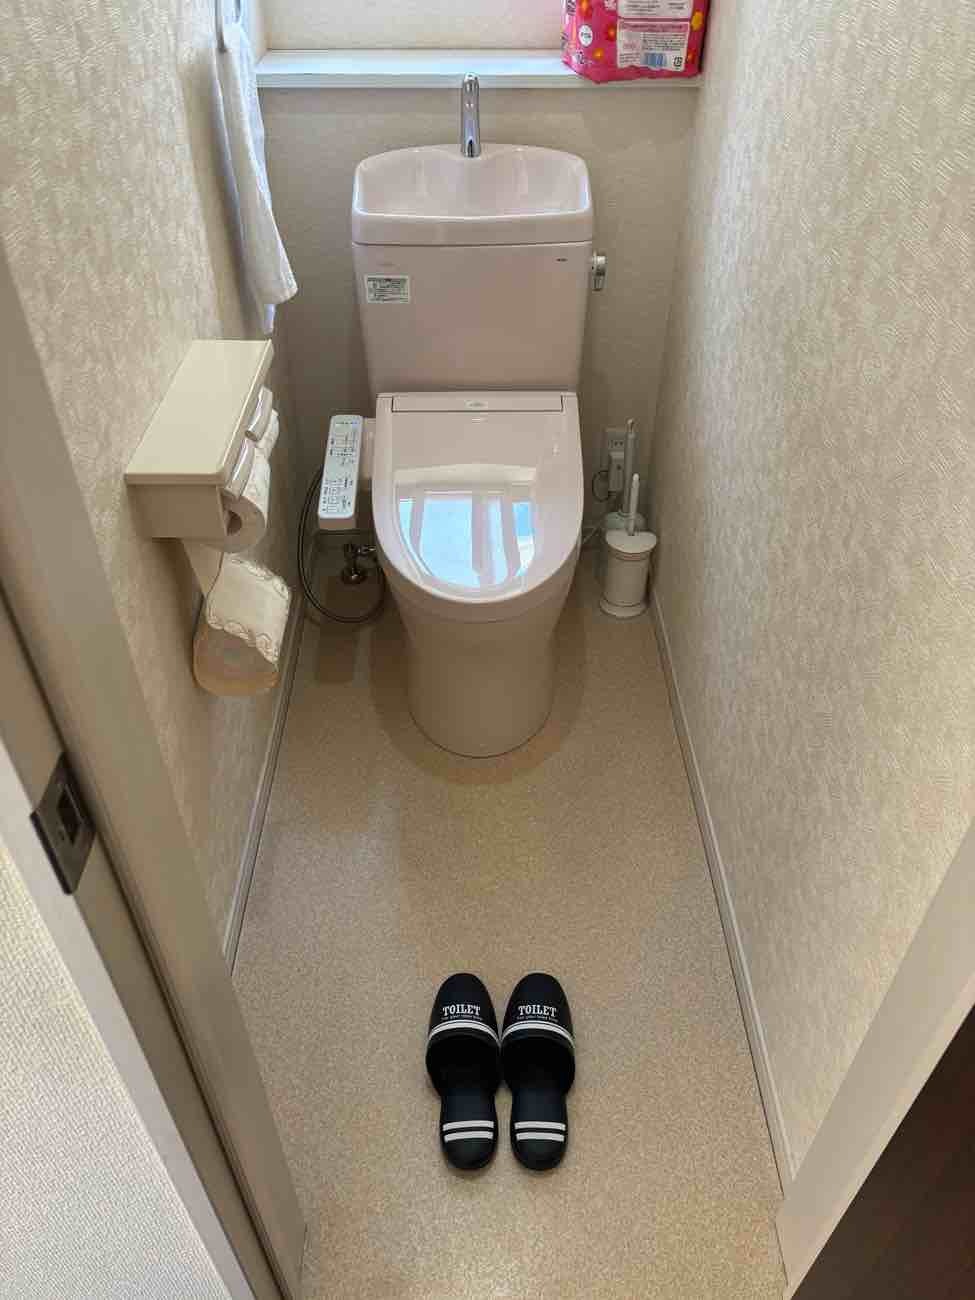 【埼玉県吉川市】M様邸トイレ交換工事が完了しました。TOTO ピュアレストQR 画像